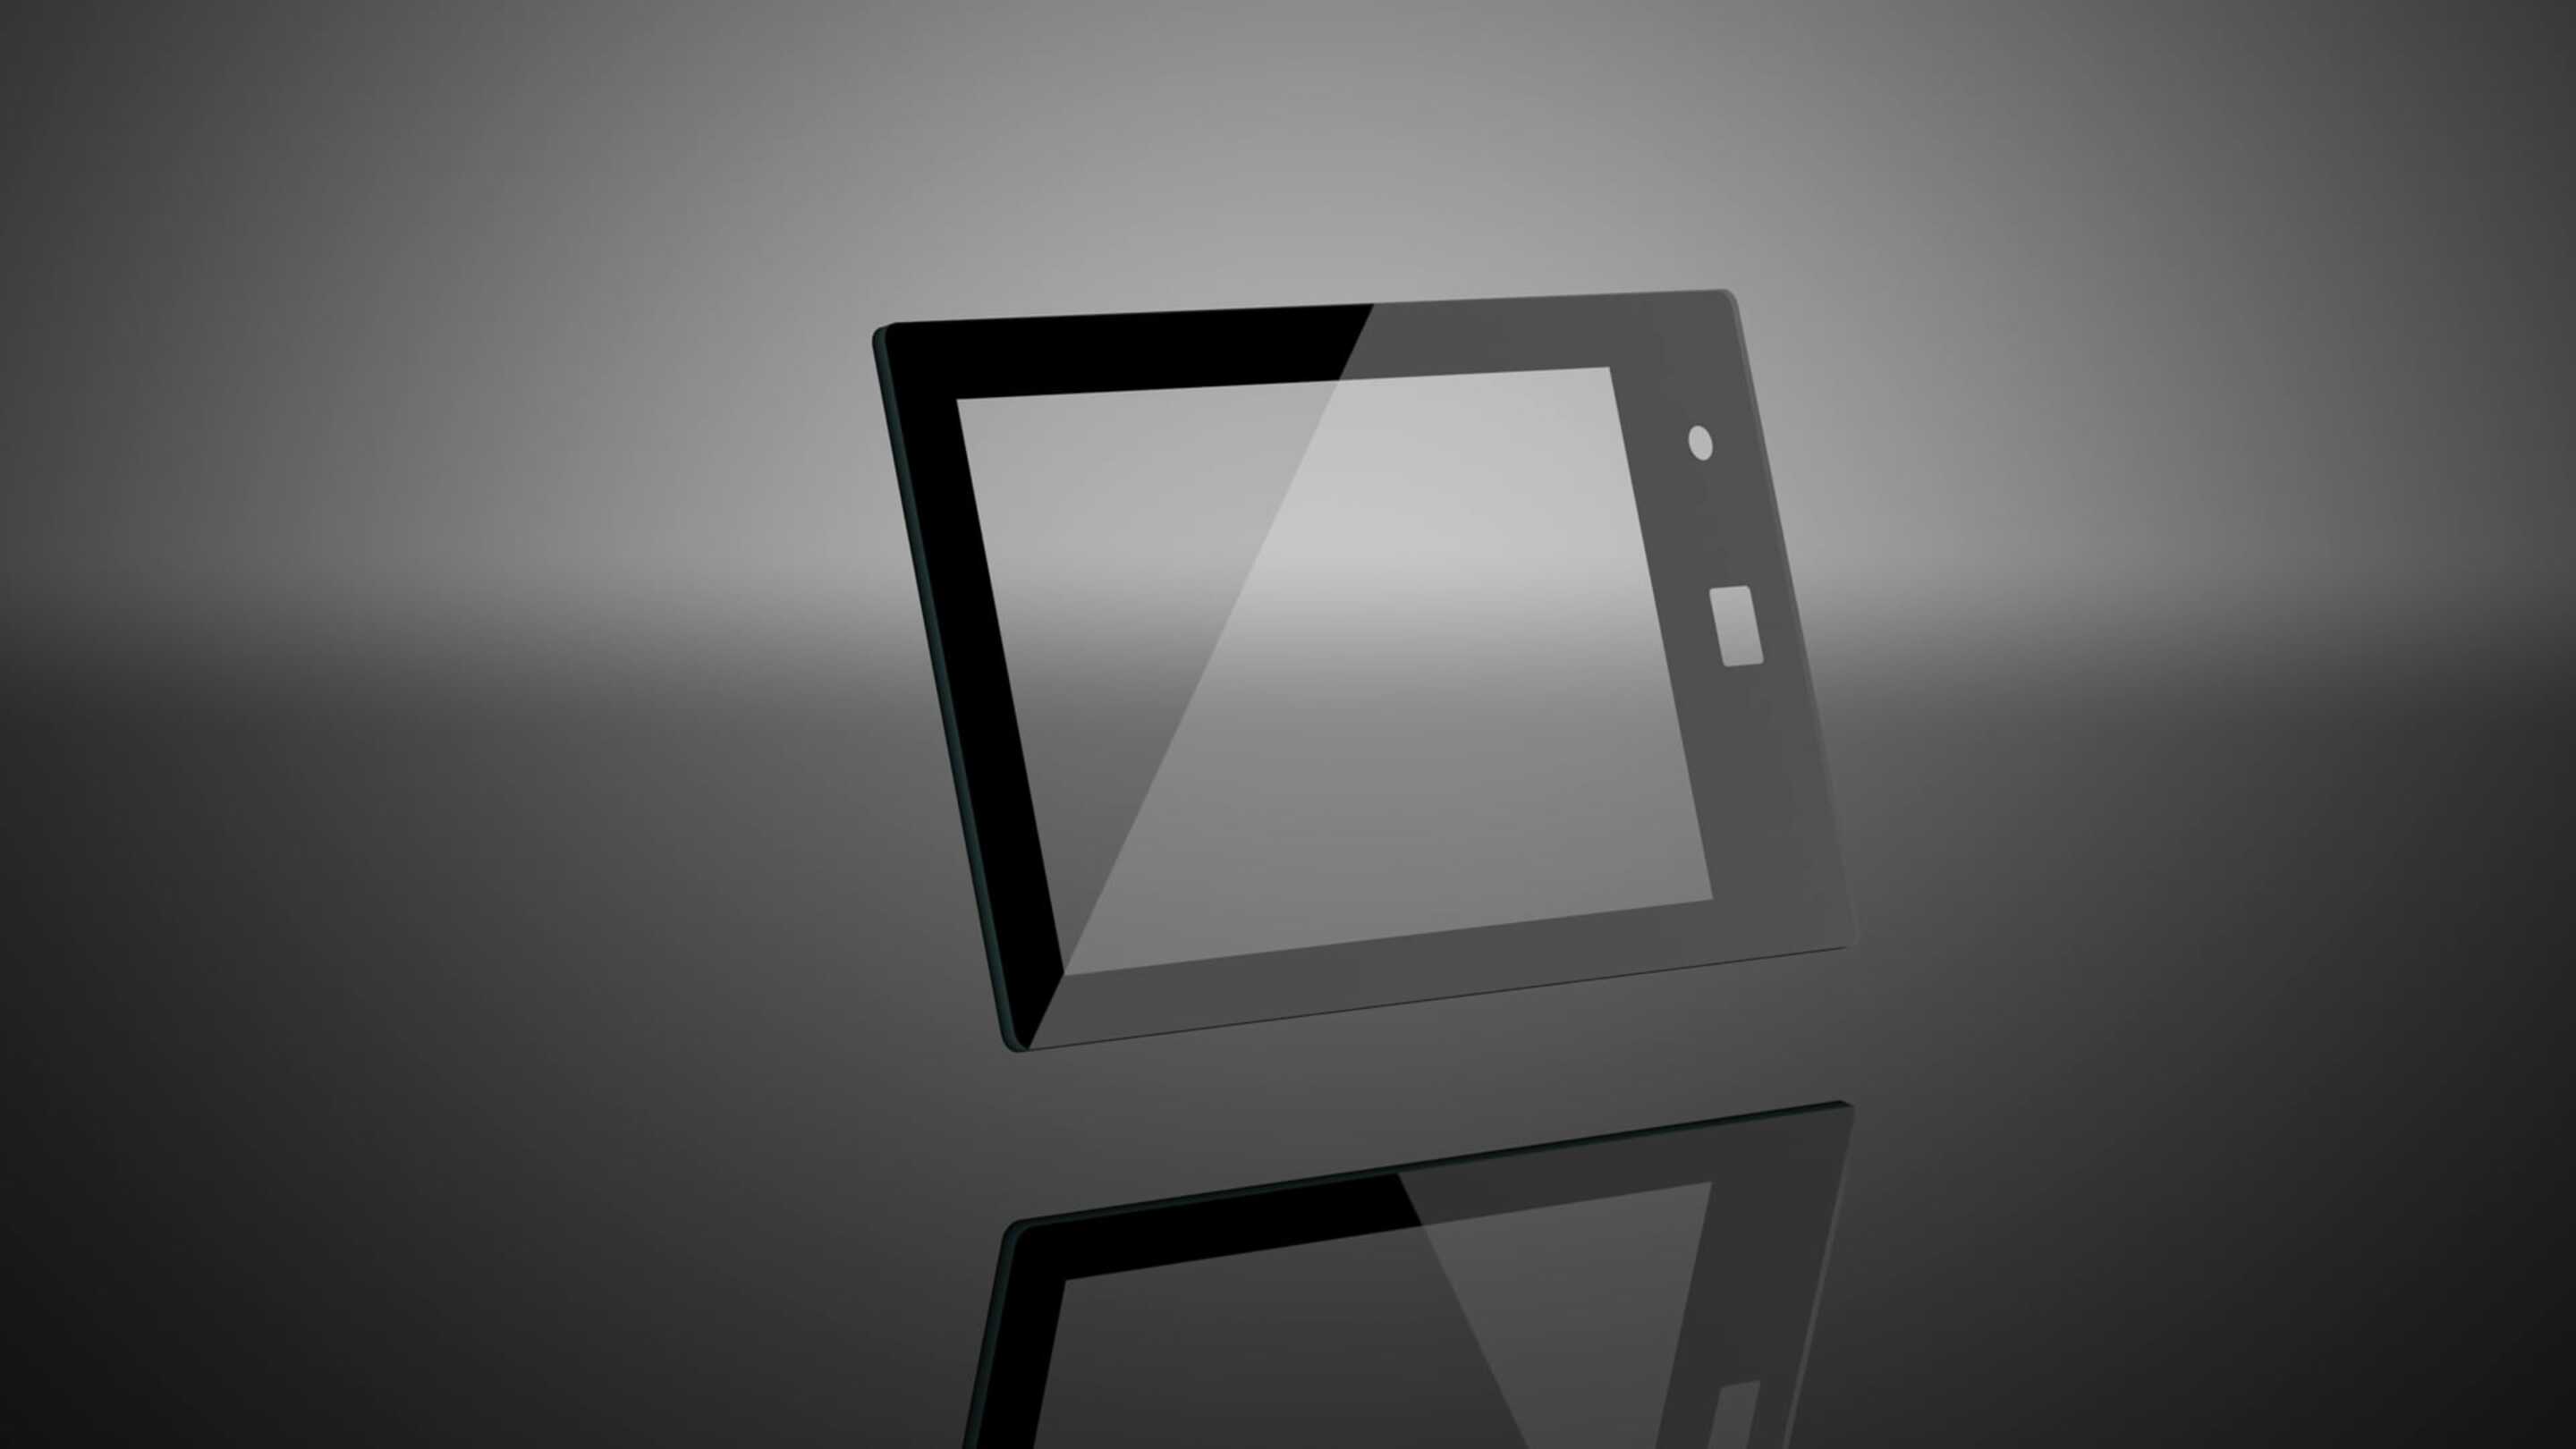 PCAP صفحه لمسی - صفحه نمایش لمسی سفارشی یک قرص سیاه و سفید با صفحه نمایش سفید